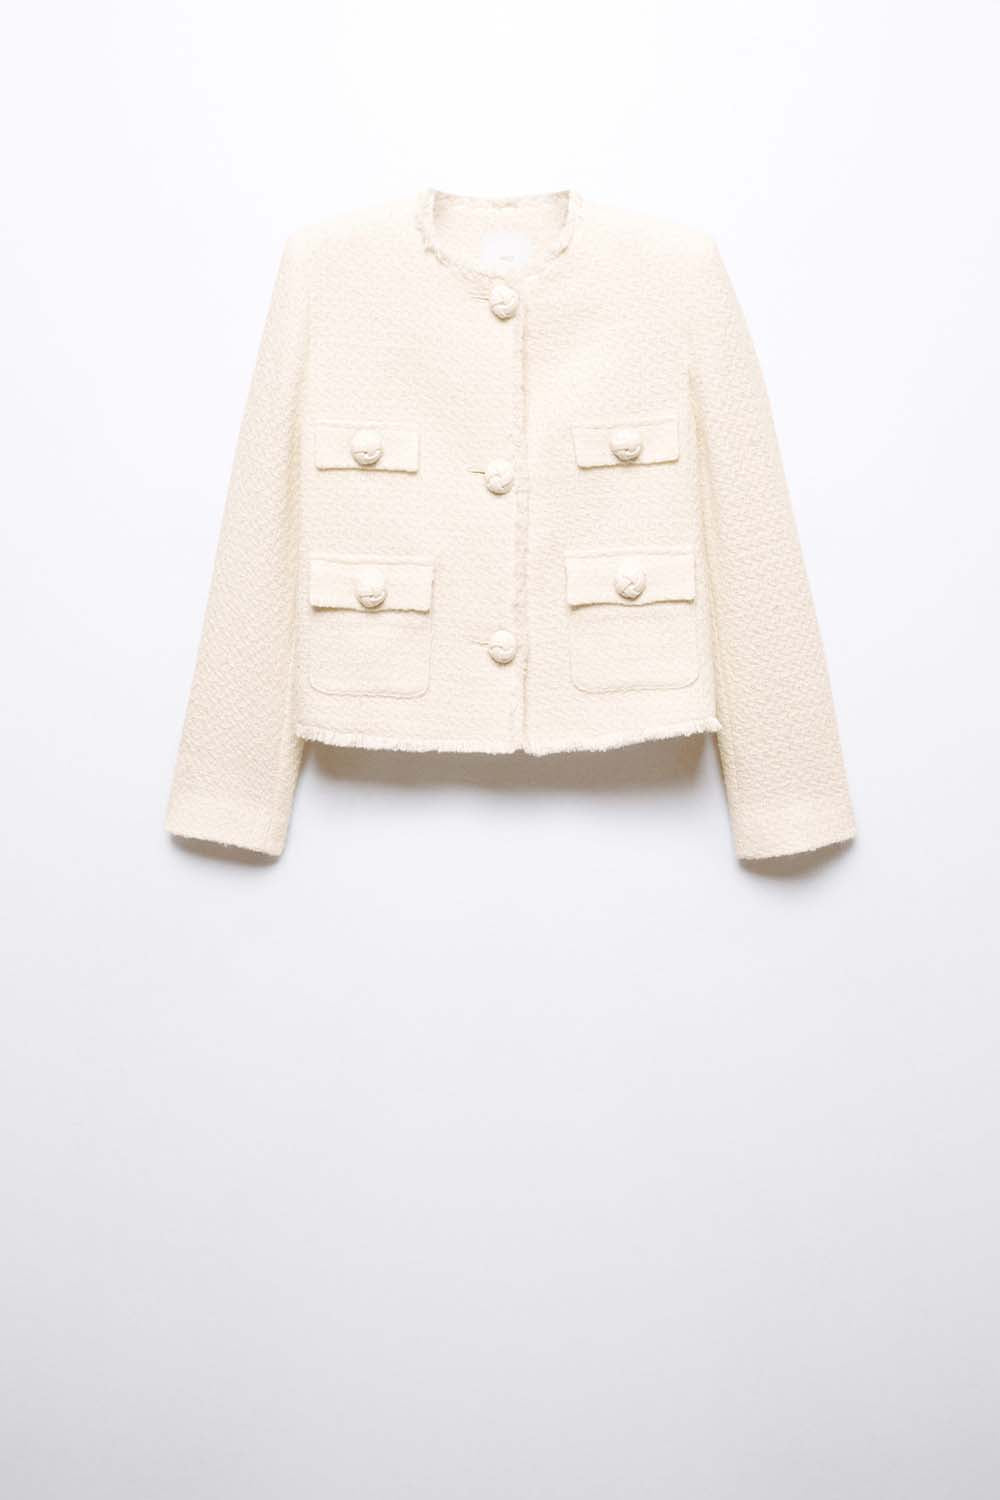 Pocket tweed jacket